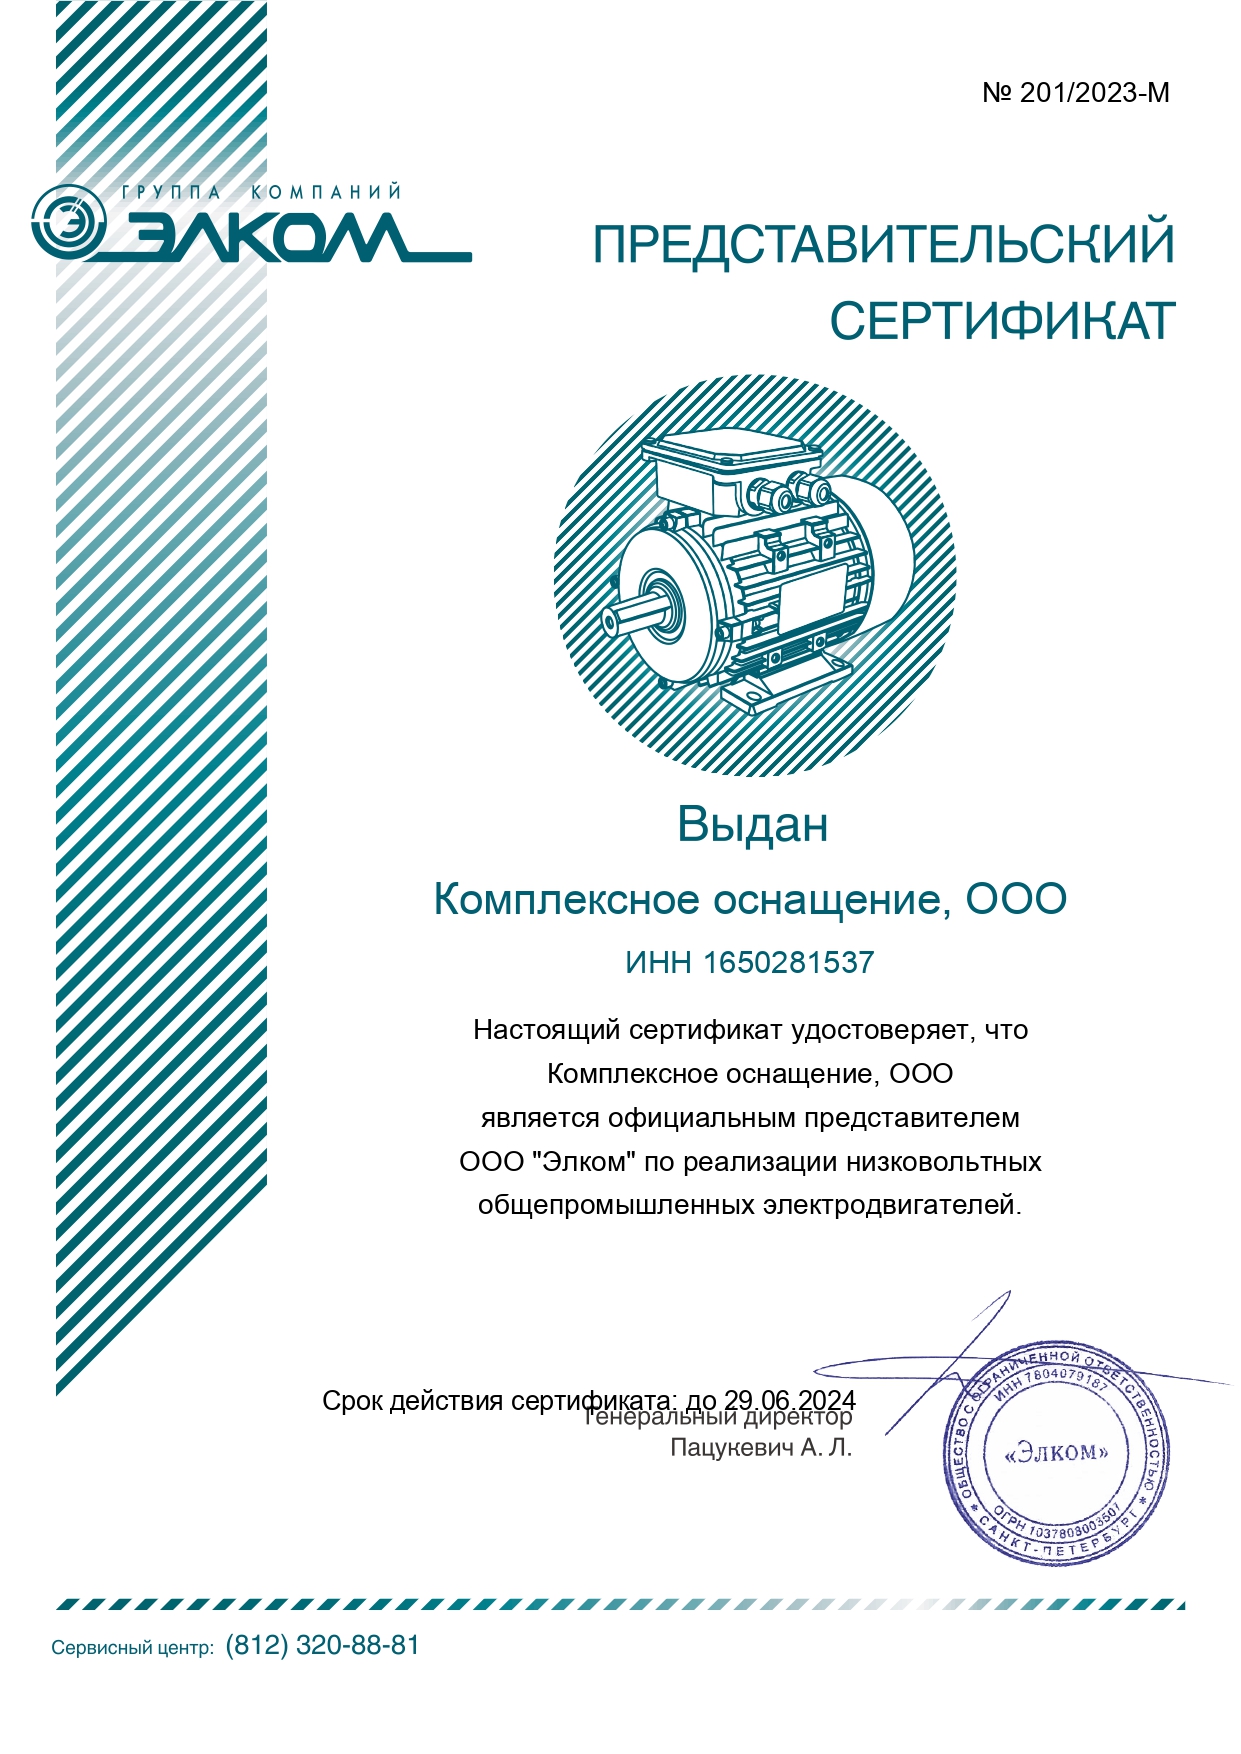 Сертификат представителя Элком - Комплексное оснащение